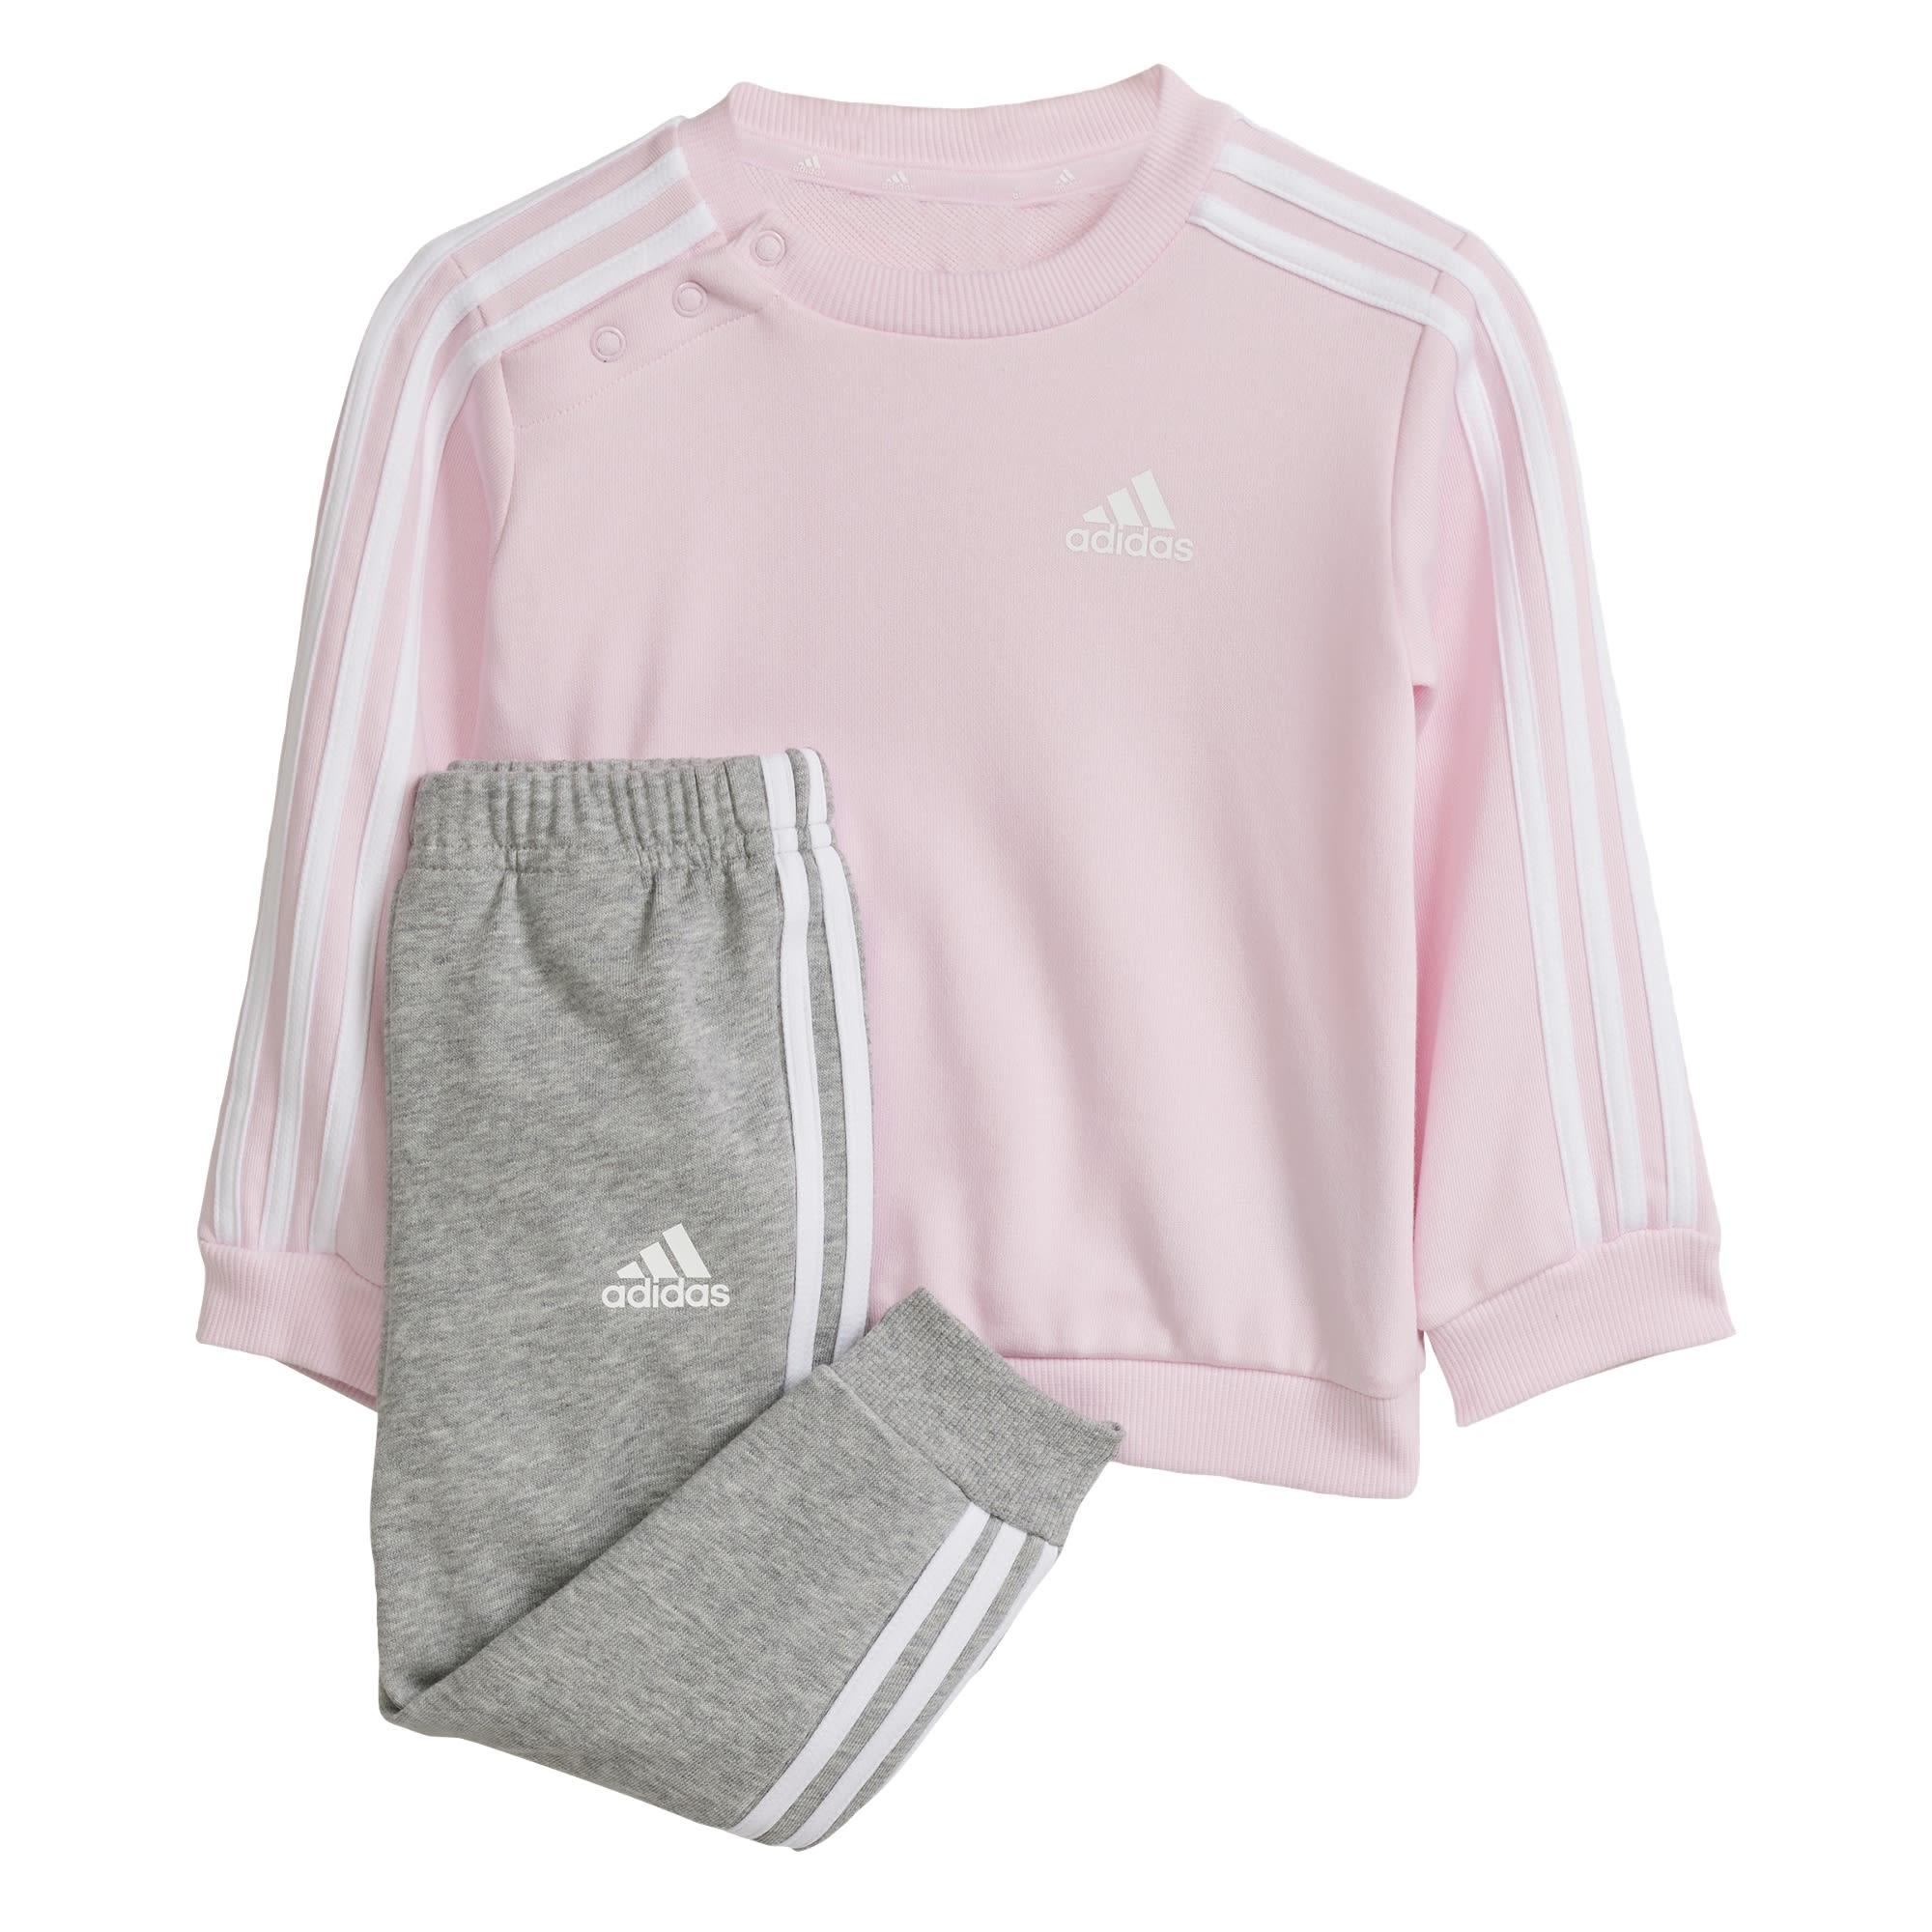 Kinder / Online Jogginganzug Trainingsanzug Clear 3-Streifen Pink kaufen Shop Adidas im Essentials SportScheck Kids White von